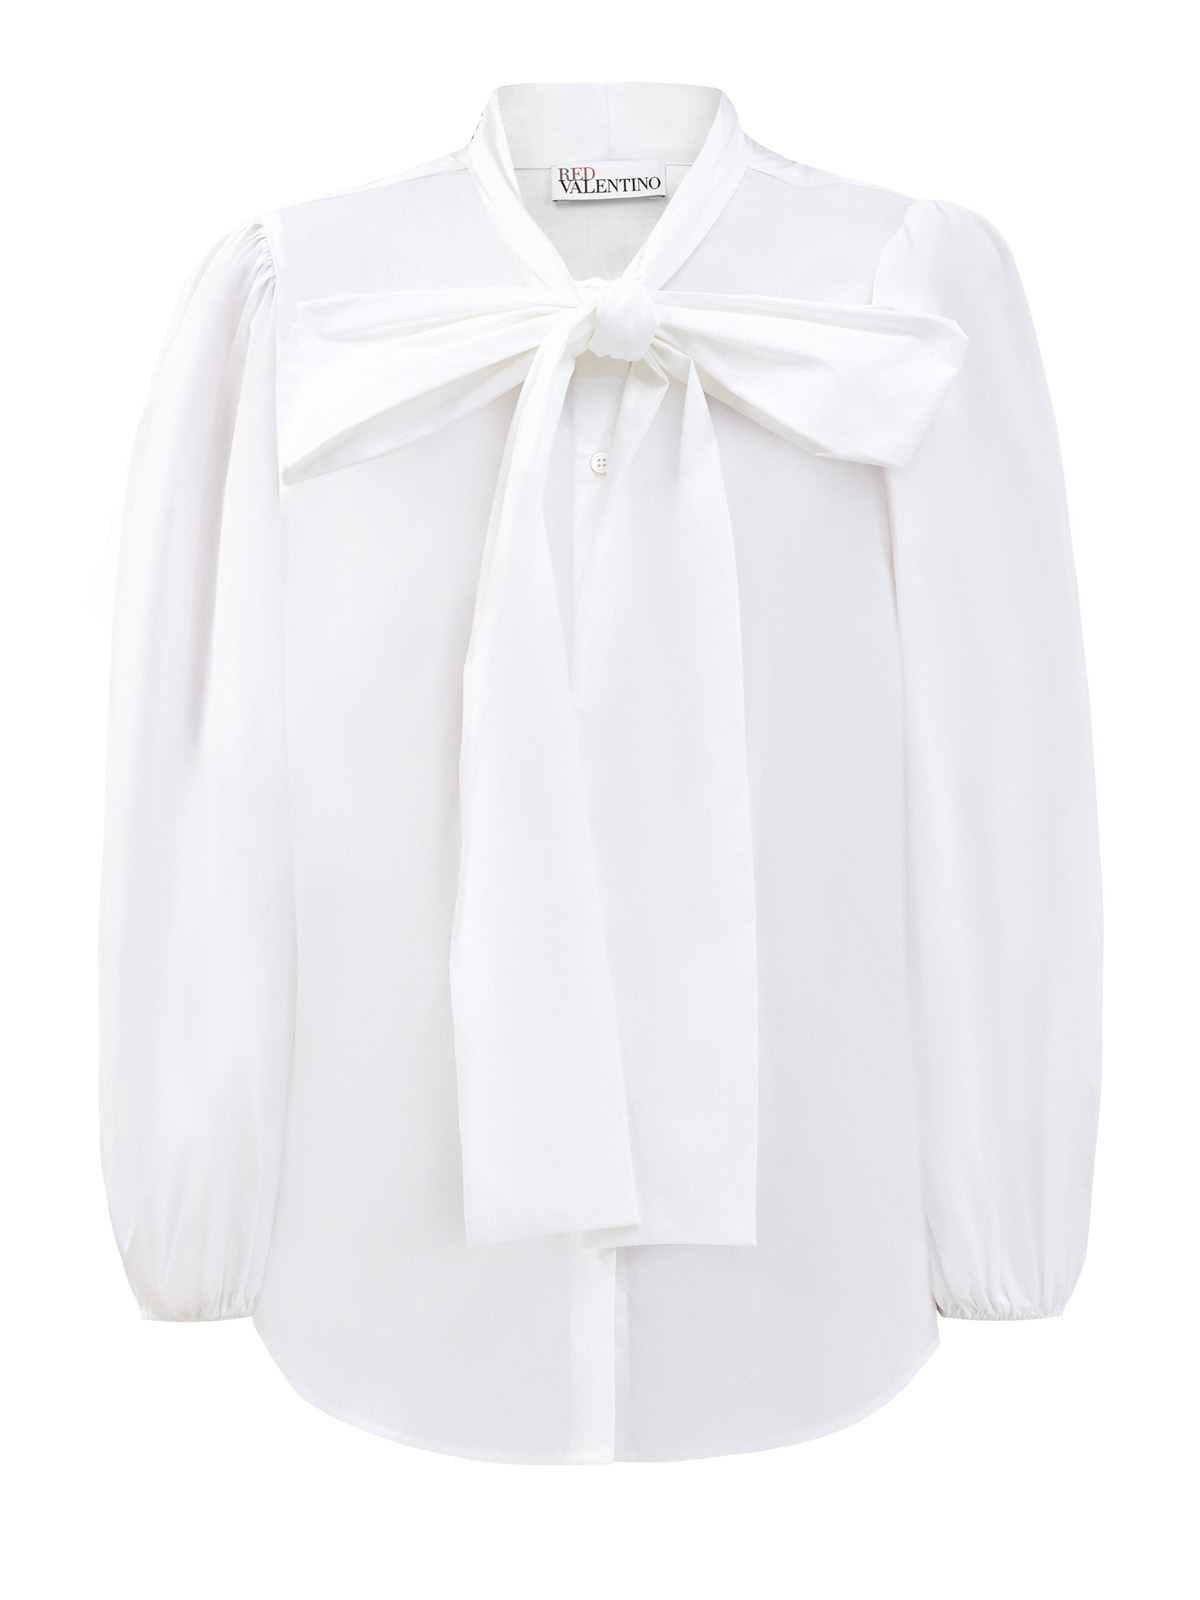 Рубашка из эластичного поплина с широким бантом REDVALENTINO, цвет белый, размер M;XL;S